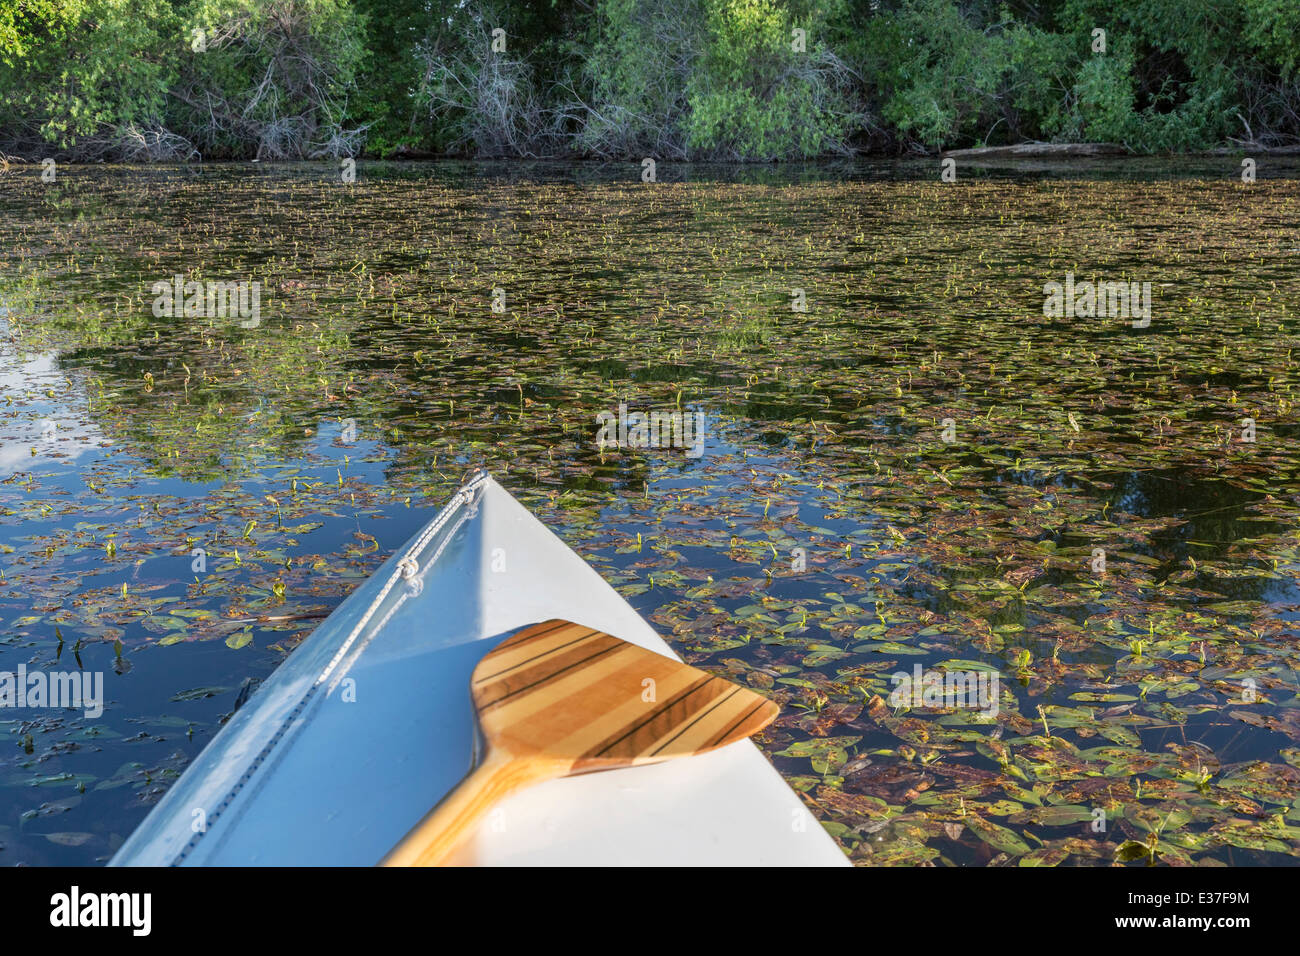 Kanu-Bogen mit einem hölzernen Paddel auf einem ruhigen See mit vegetation Stockfoto